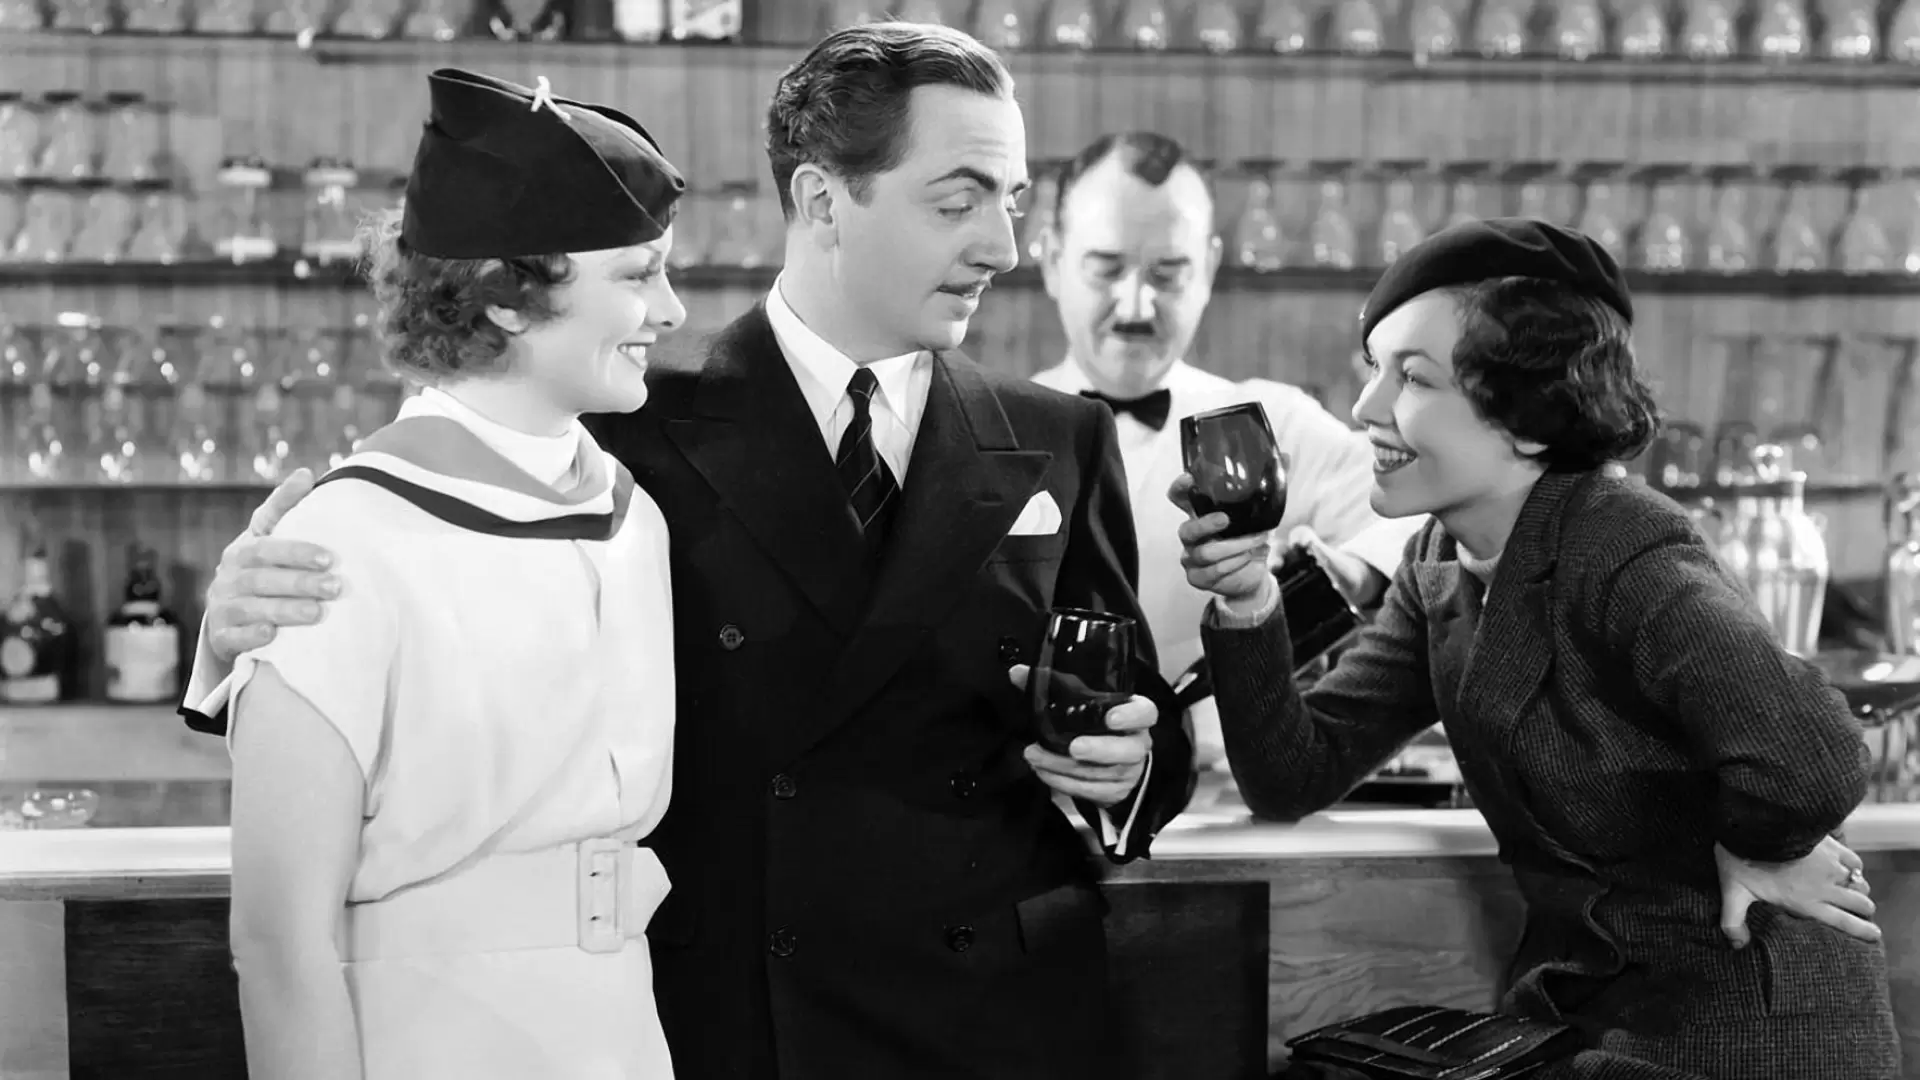 دانلود فیلم The Thin Man 1934 (مرد لاغر) با زیرنویس فارسی و تماشای آنلاین